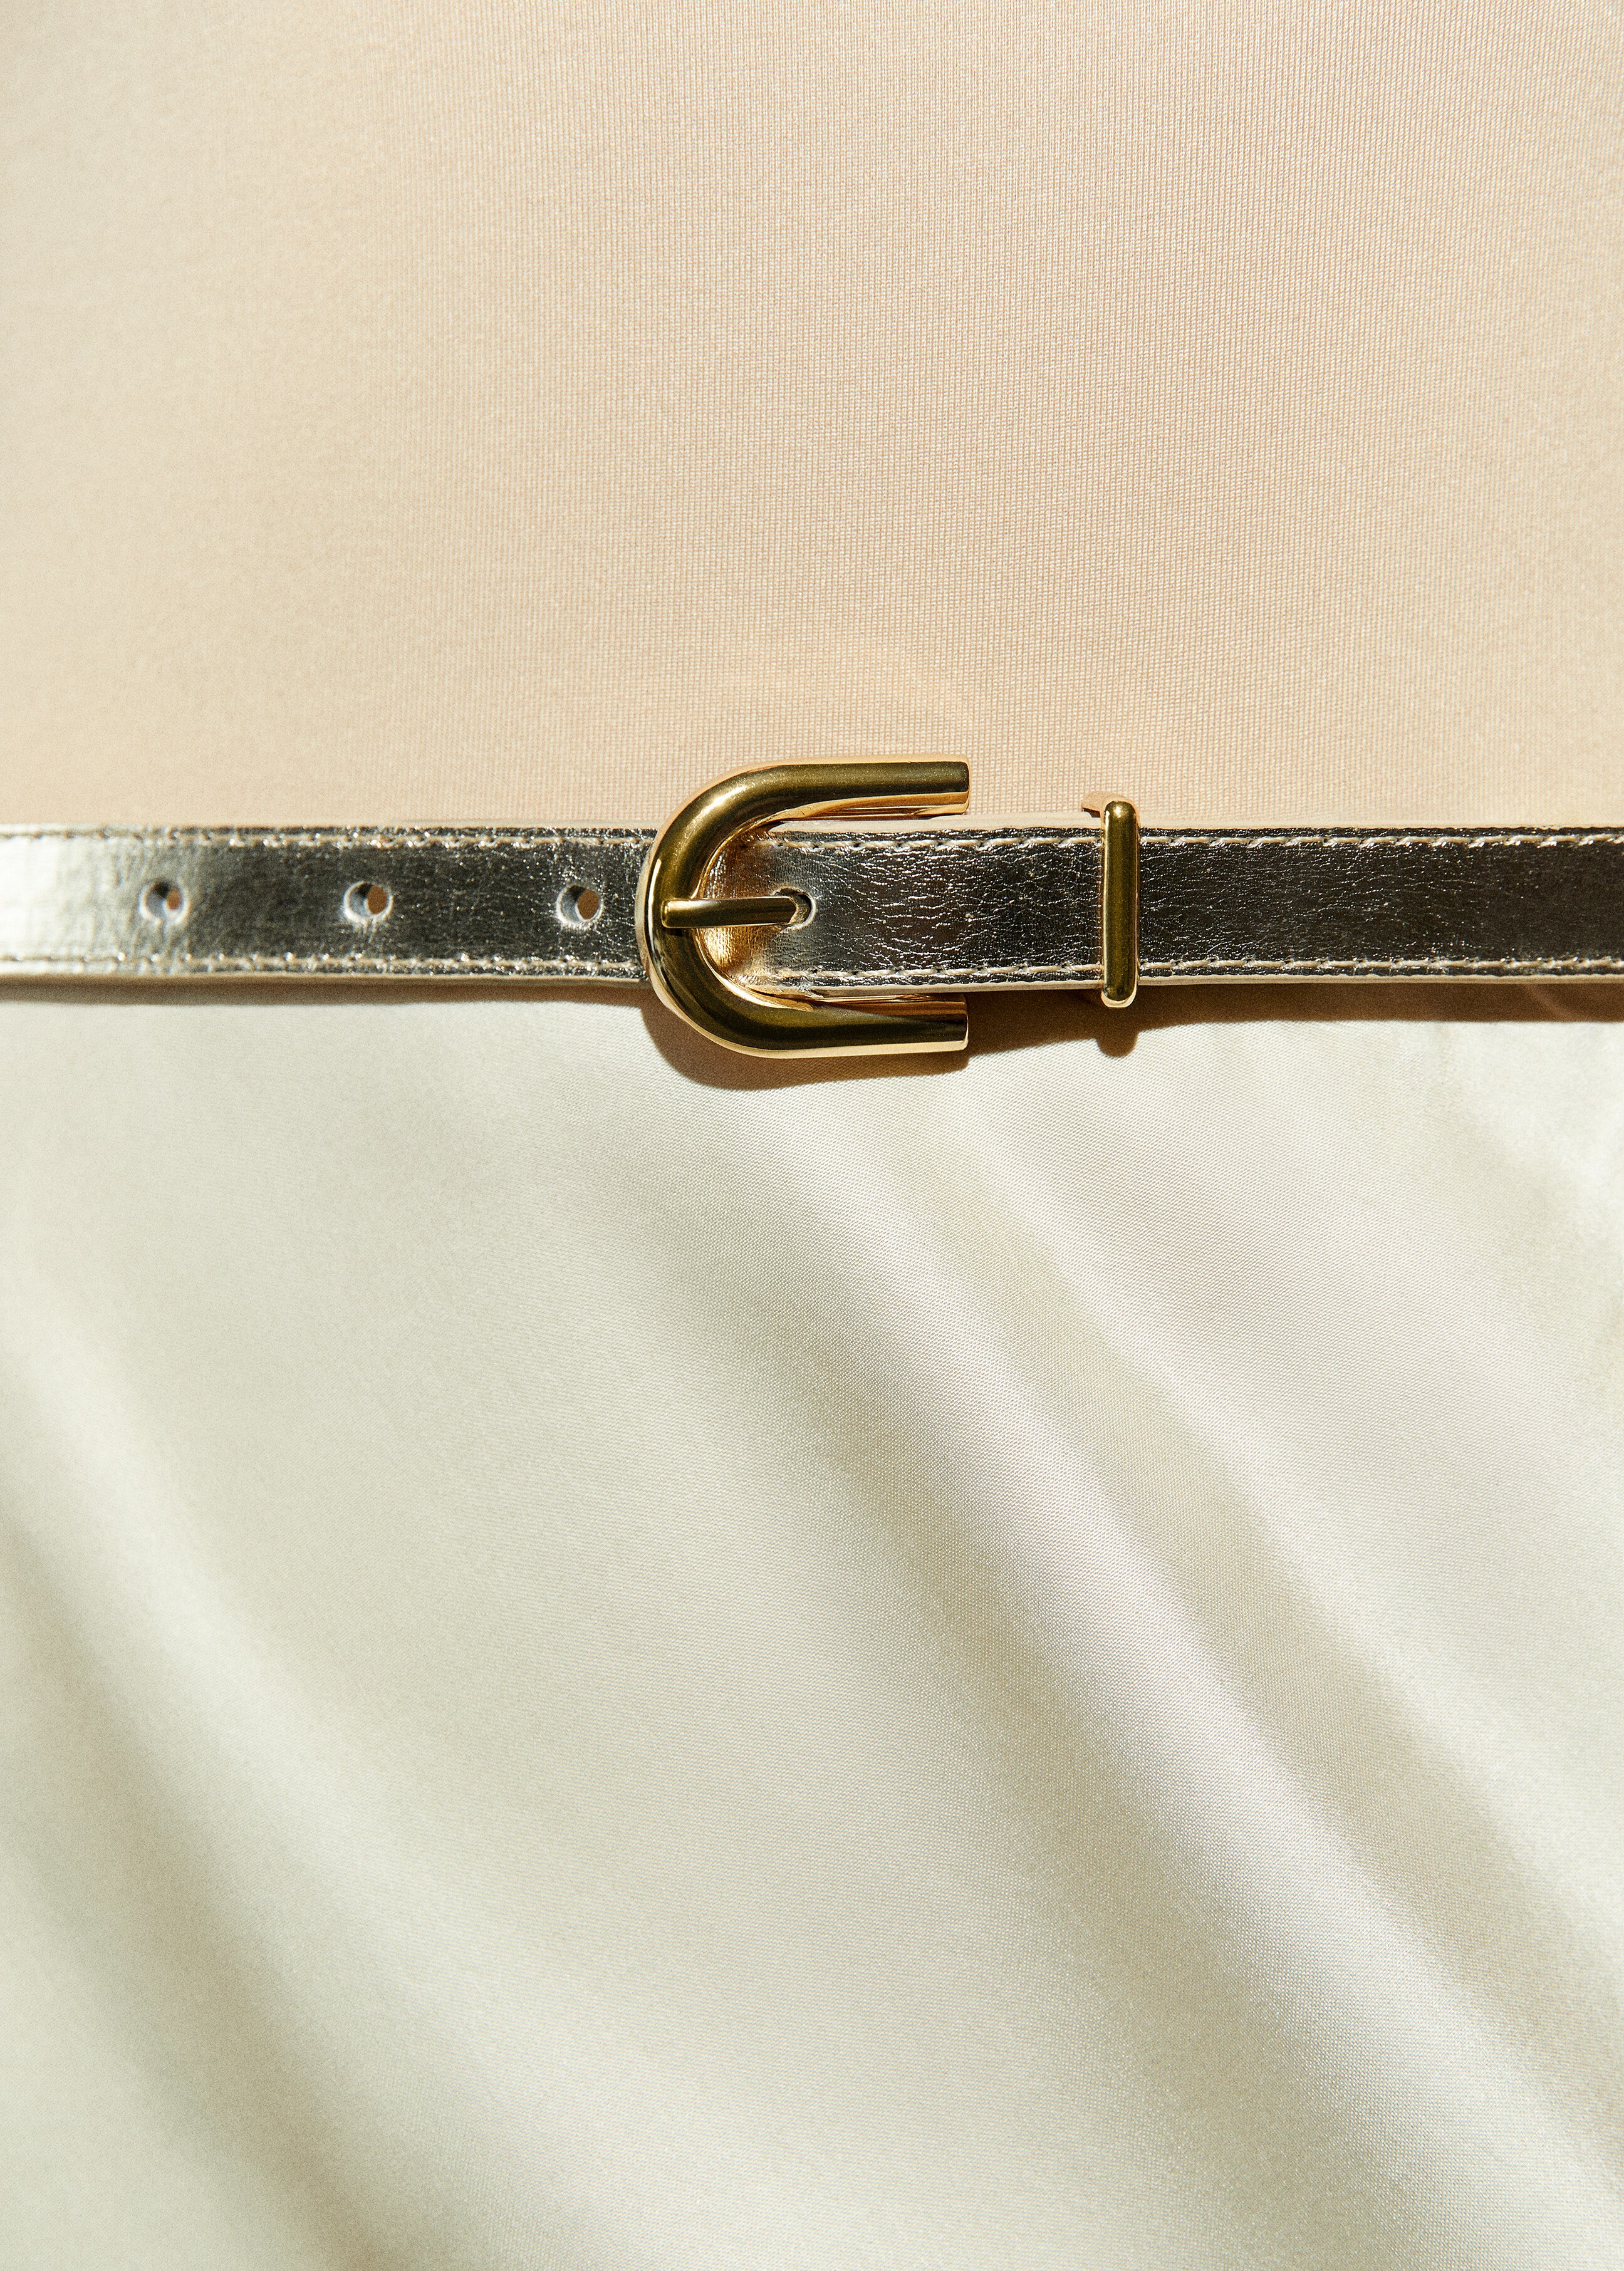 Cinturó metal·litzat sivella - Detall de l'article 9